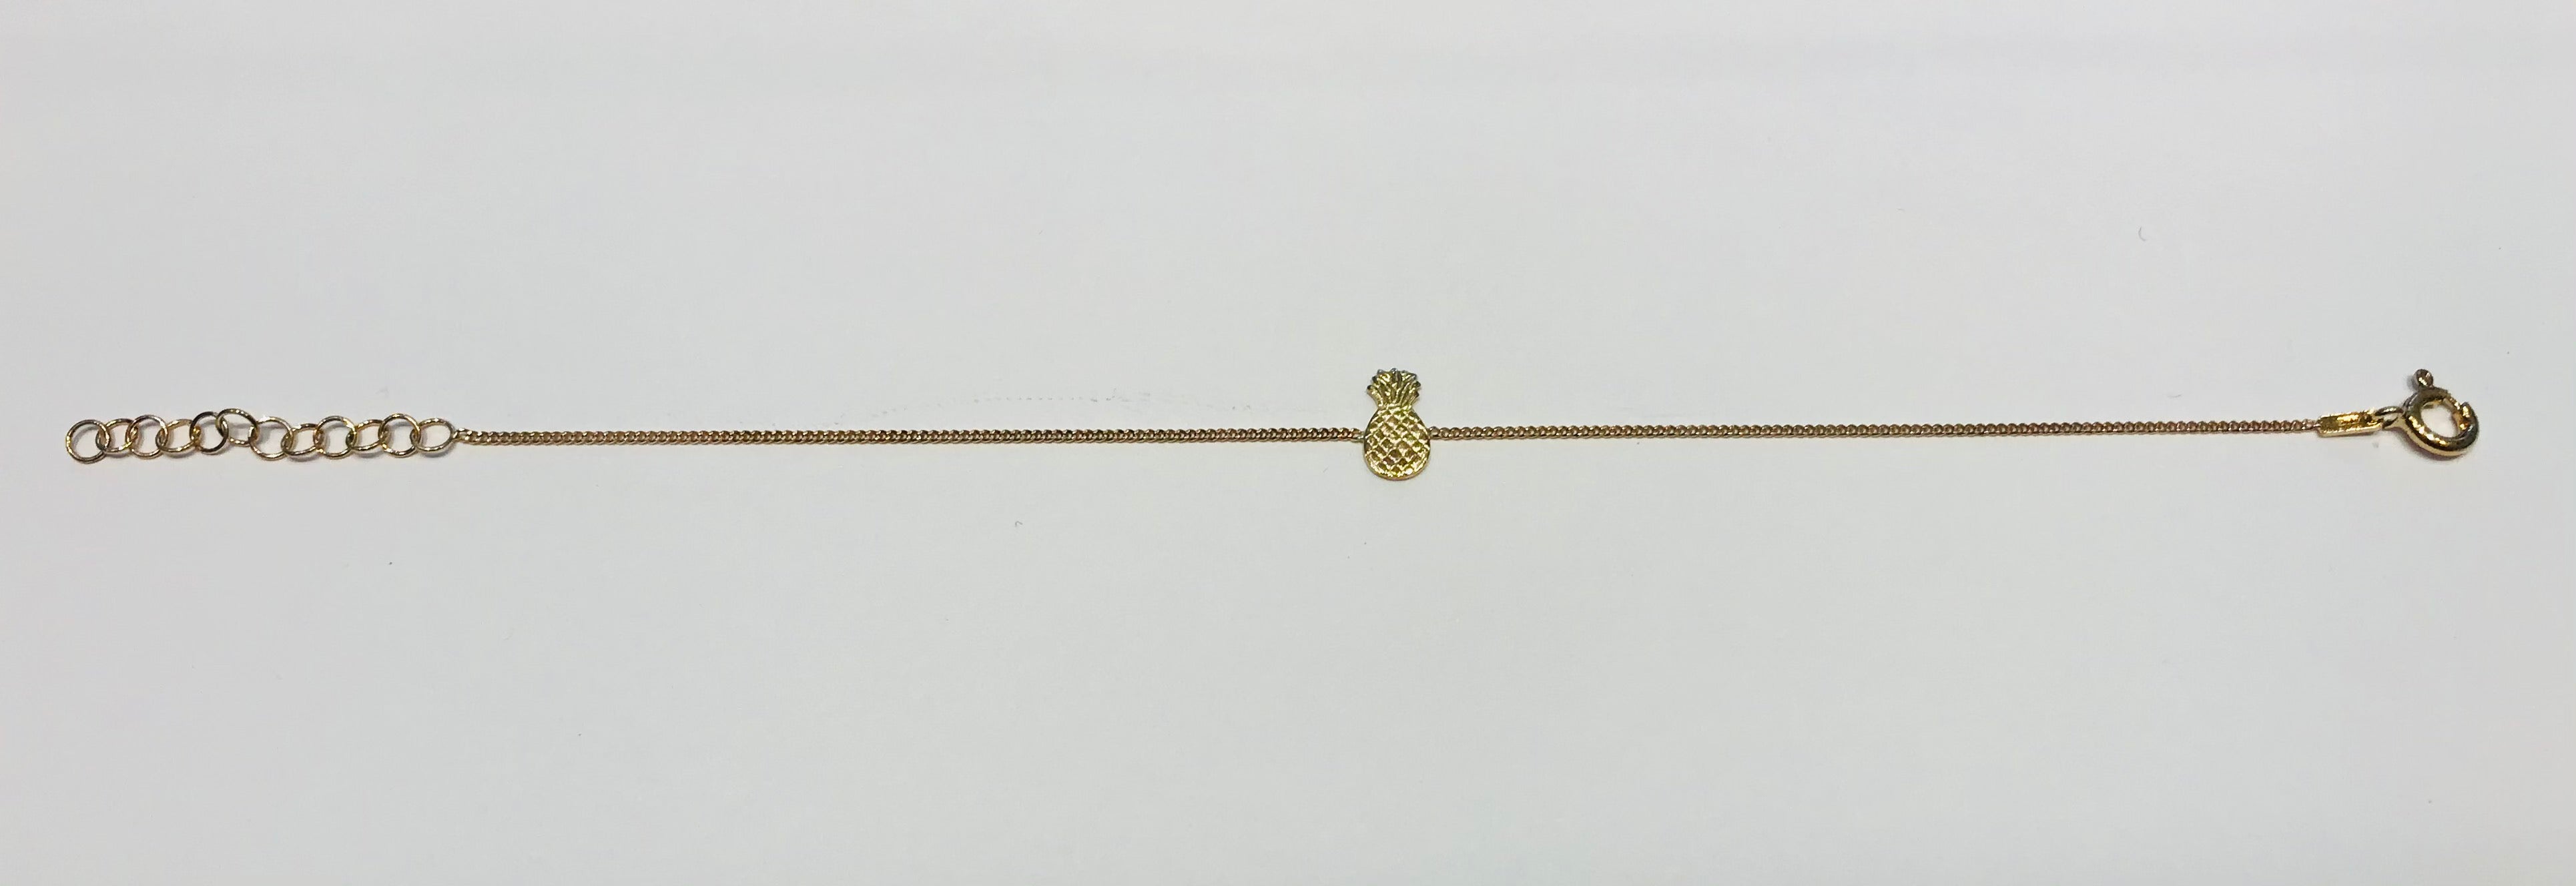 SAM&CEL goldplated bracelet pineapple